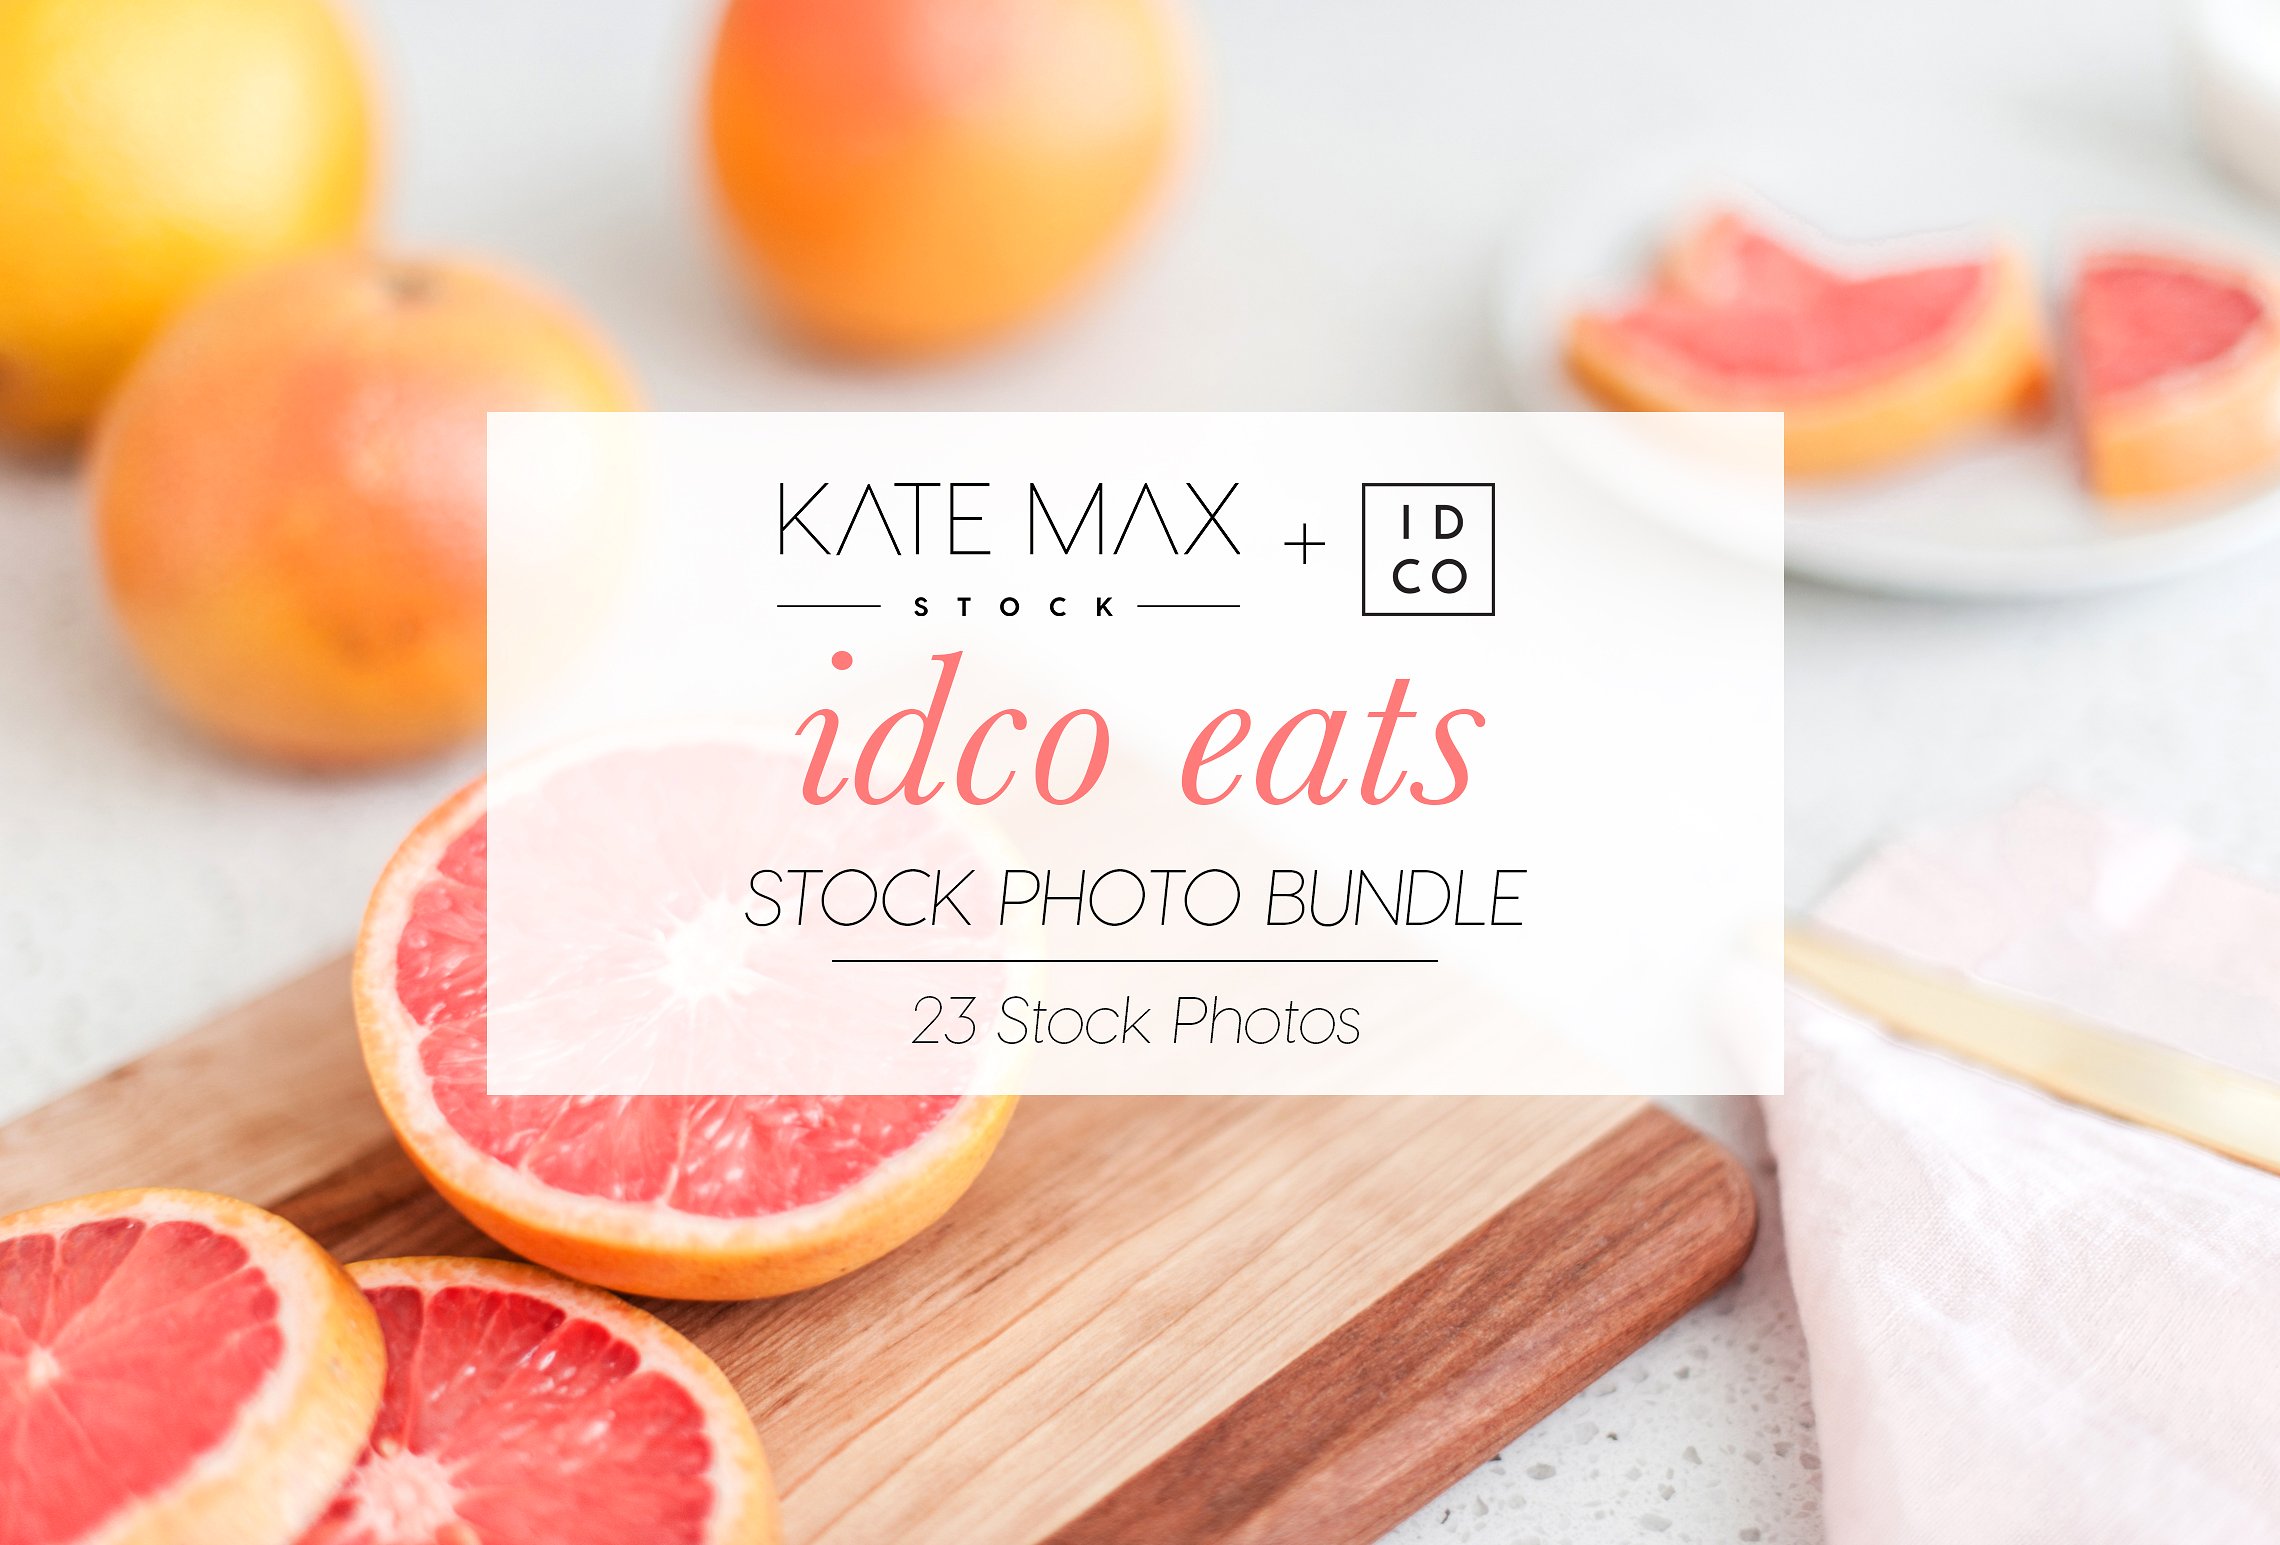 新鲜西柚厨房食物场景样机模板 IDCO Eats Stock Photo Bundle插图